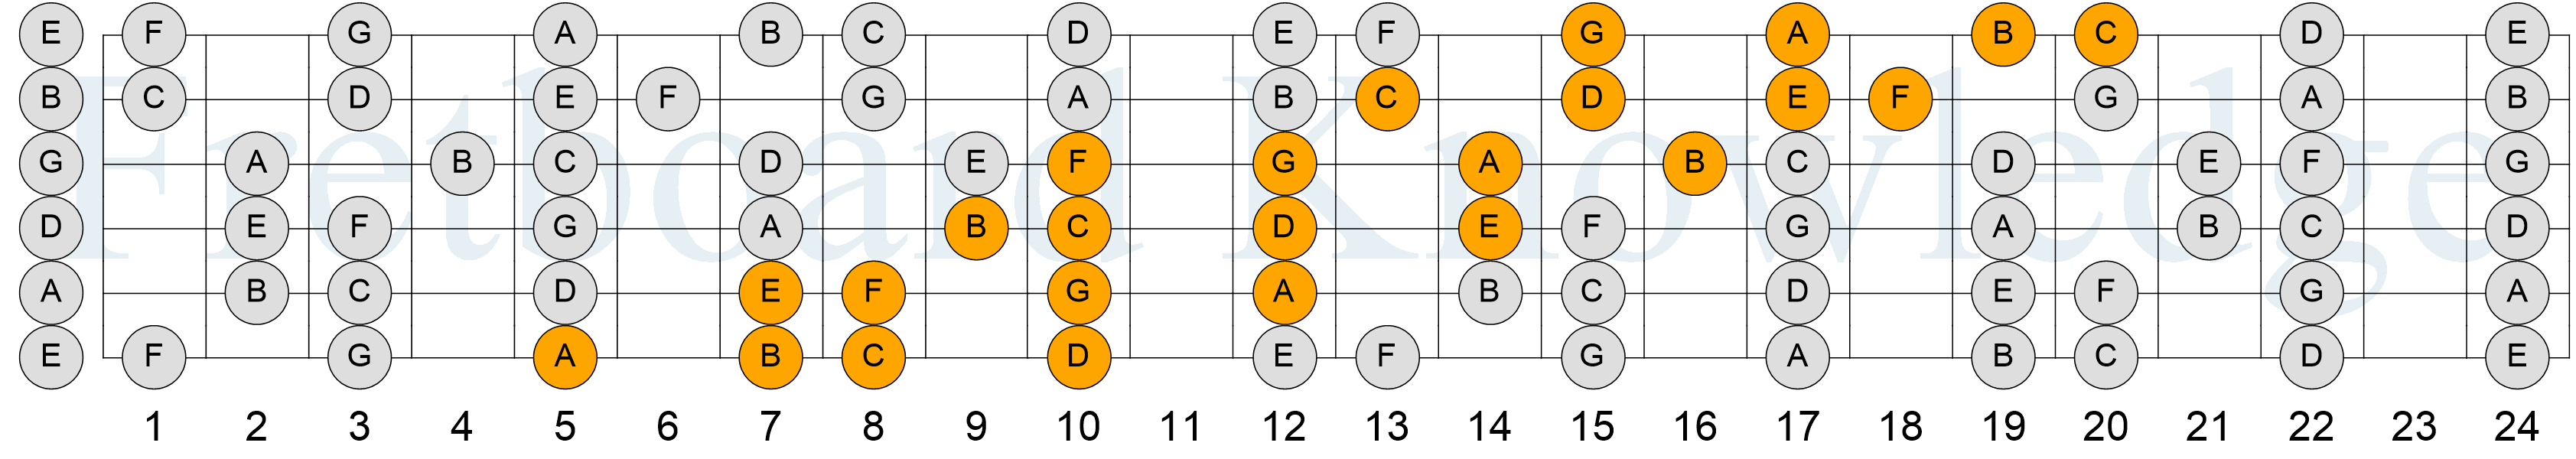 C Major Scale - 4NPS - Pattern 4